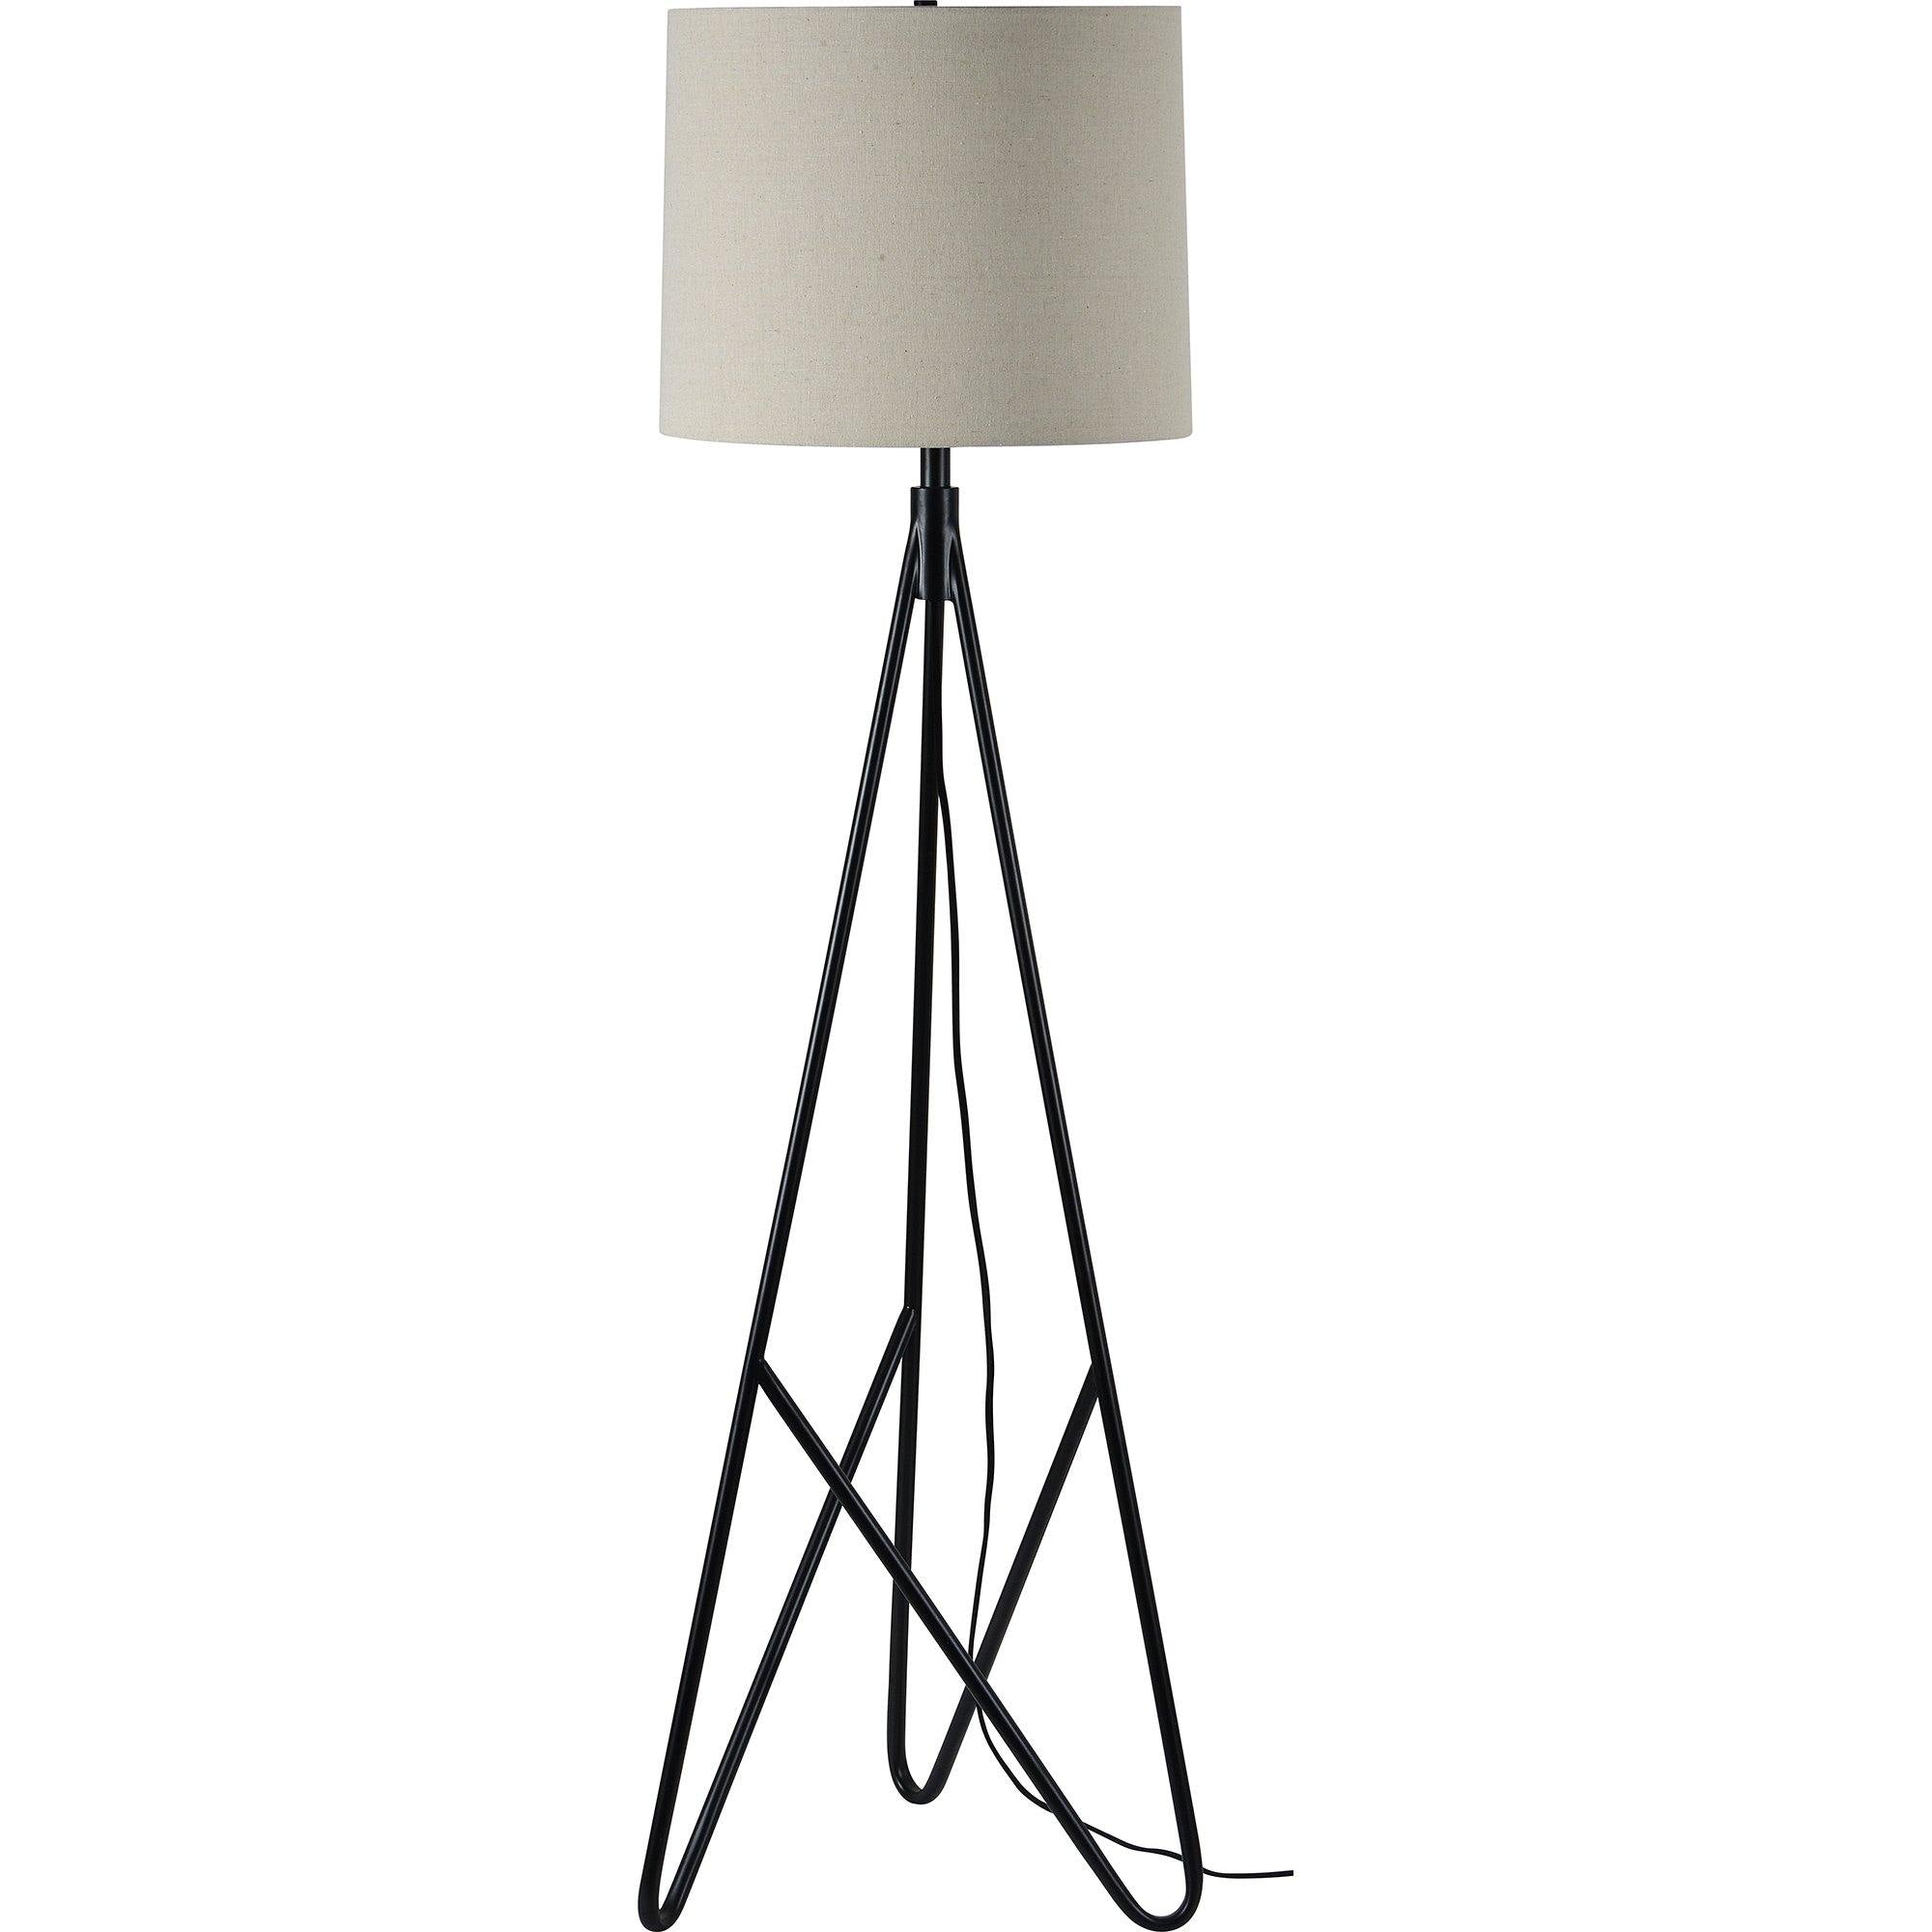 Stacey Black Floor Lamp - Reimagine Designs - Floor Lamp